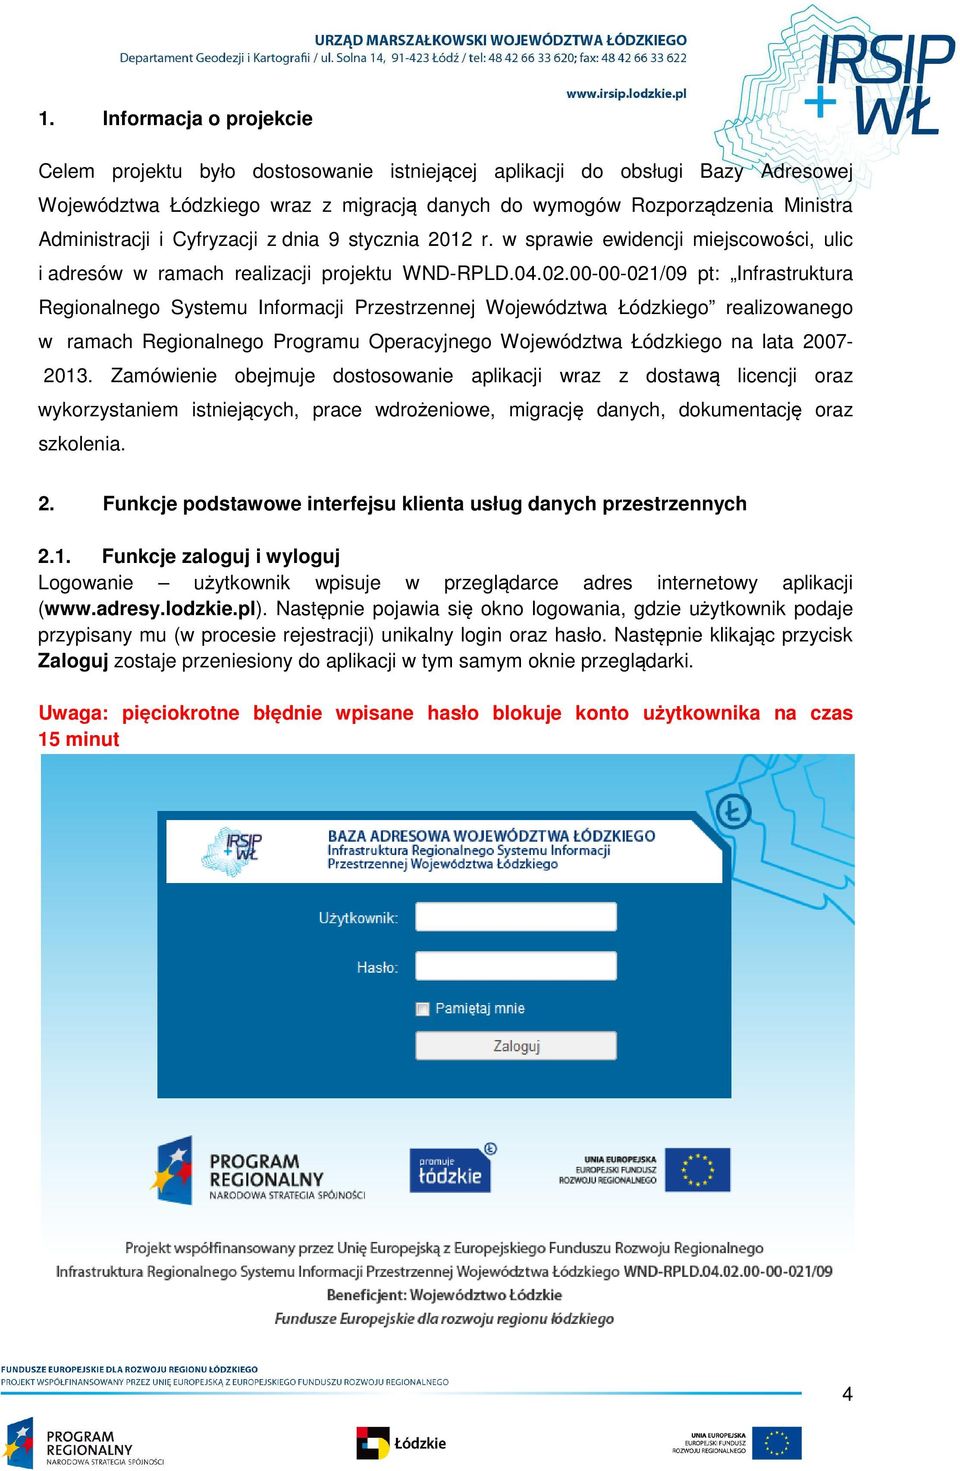 00-00-021/09 pt: Infrastruktura Regionalnego Systemu Informacji Przestrzennej Województwa Łódzkiego realizowanego w ramach Regionalnego Programu Operacyjnego Województwa Łódzkiego na lata 2007-2013.